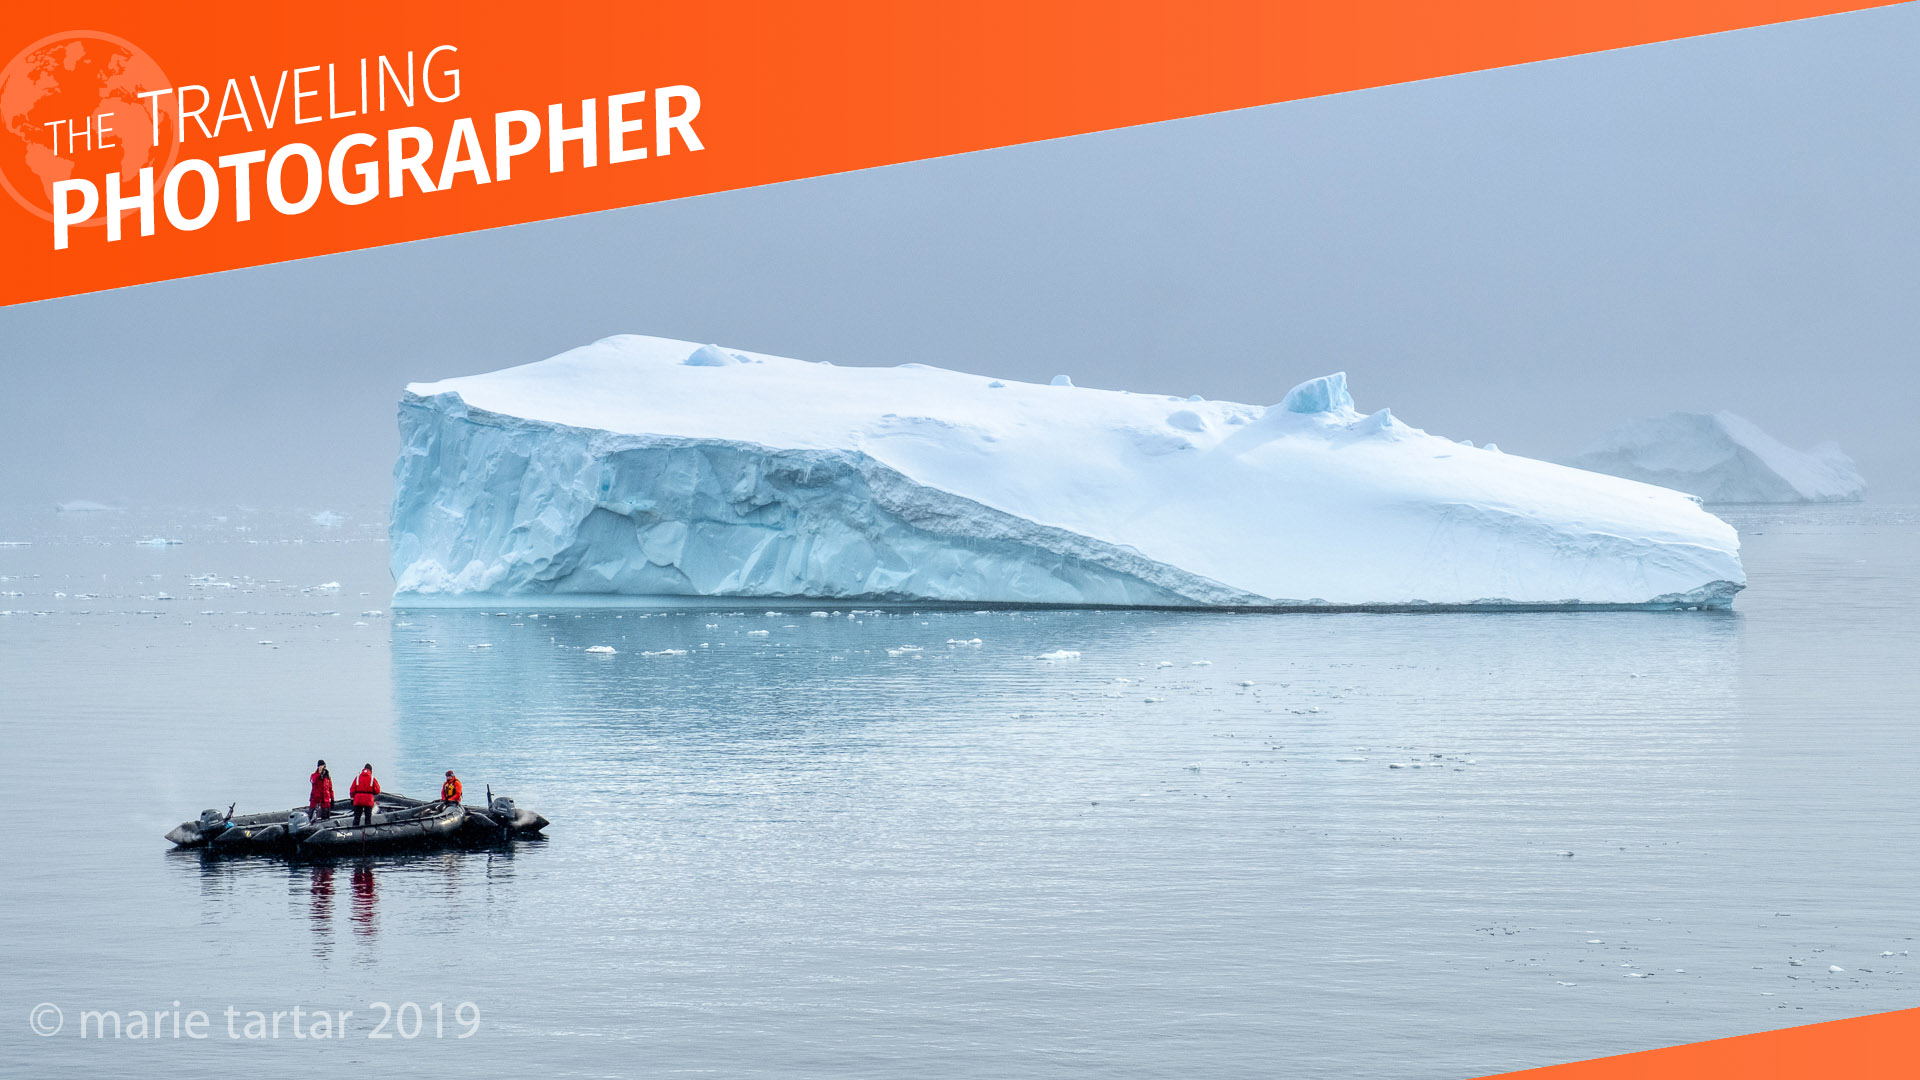 Travelers in a zodiac admire an iceberg in Antarctica